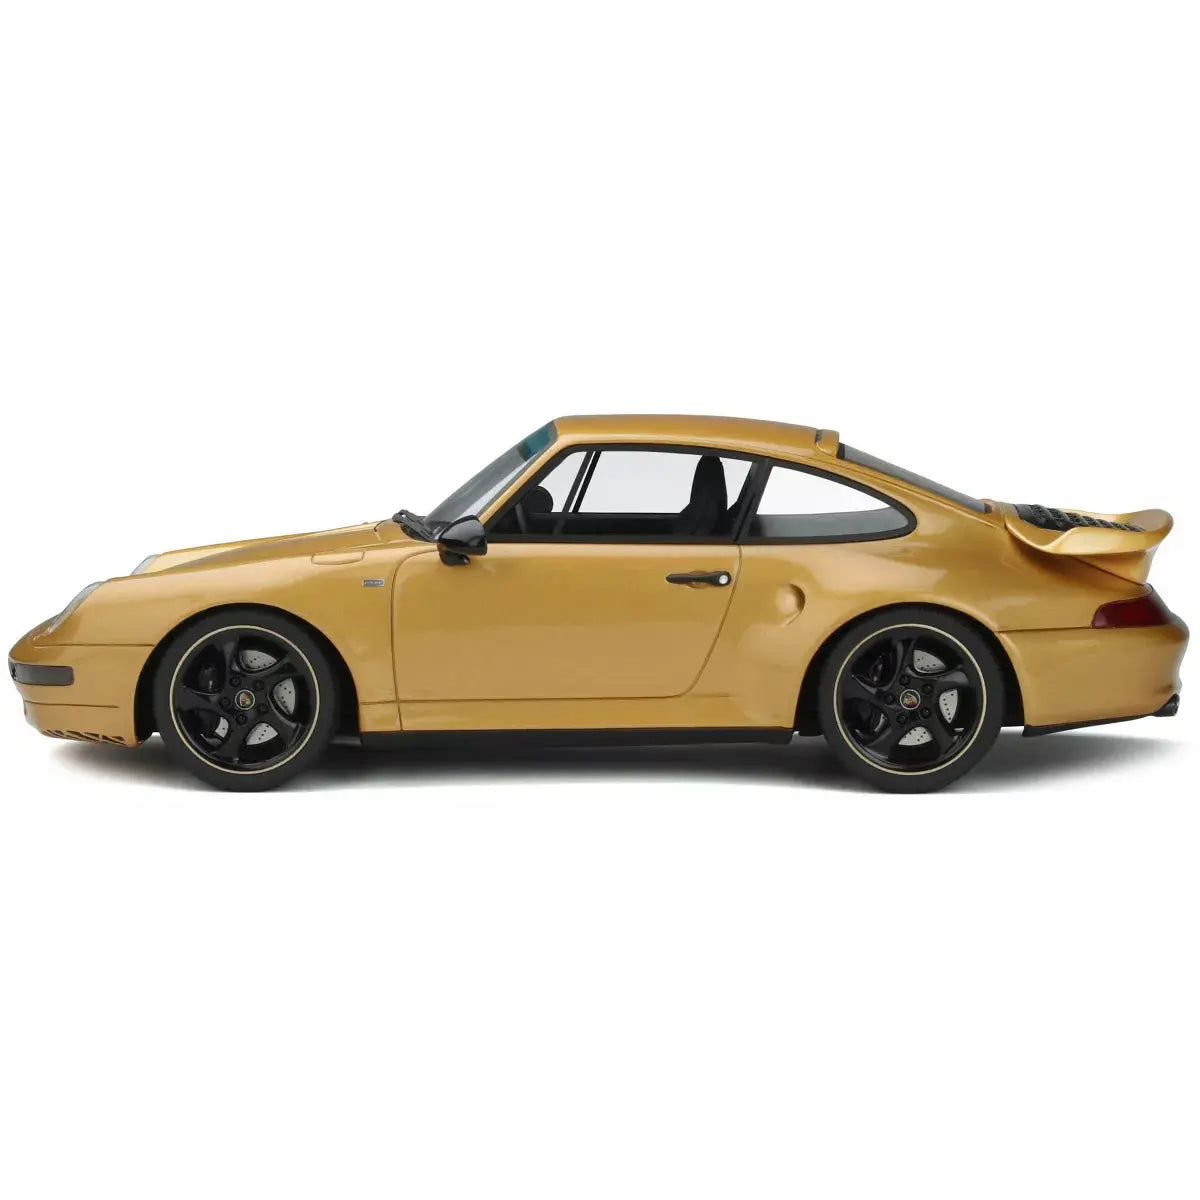 1:18 SCALE Porsche 911 (993) Turbo S - Perfect Diecast